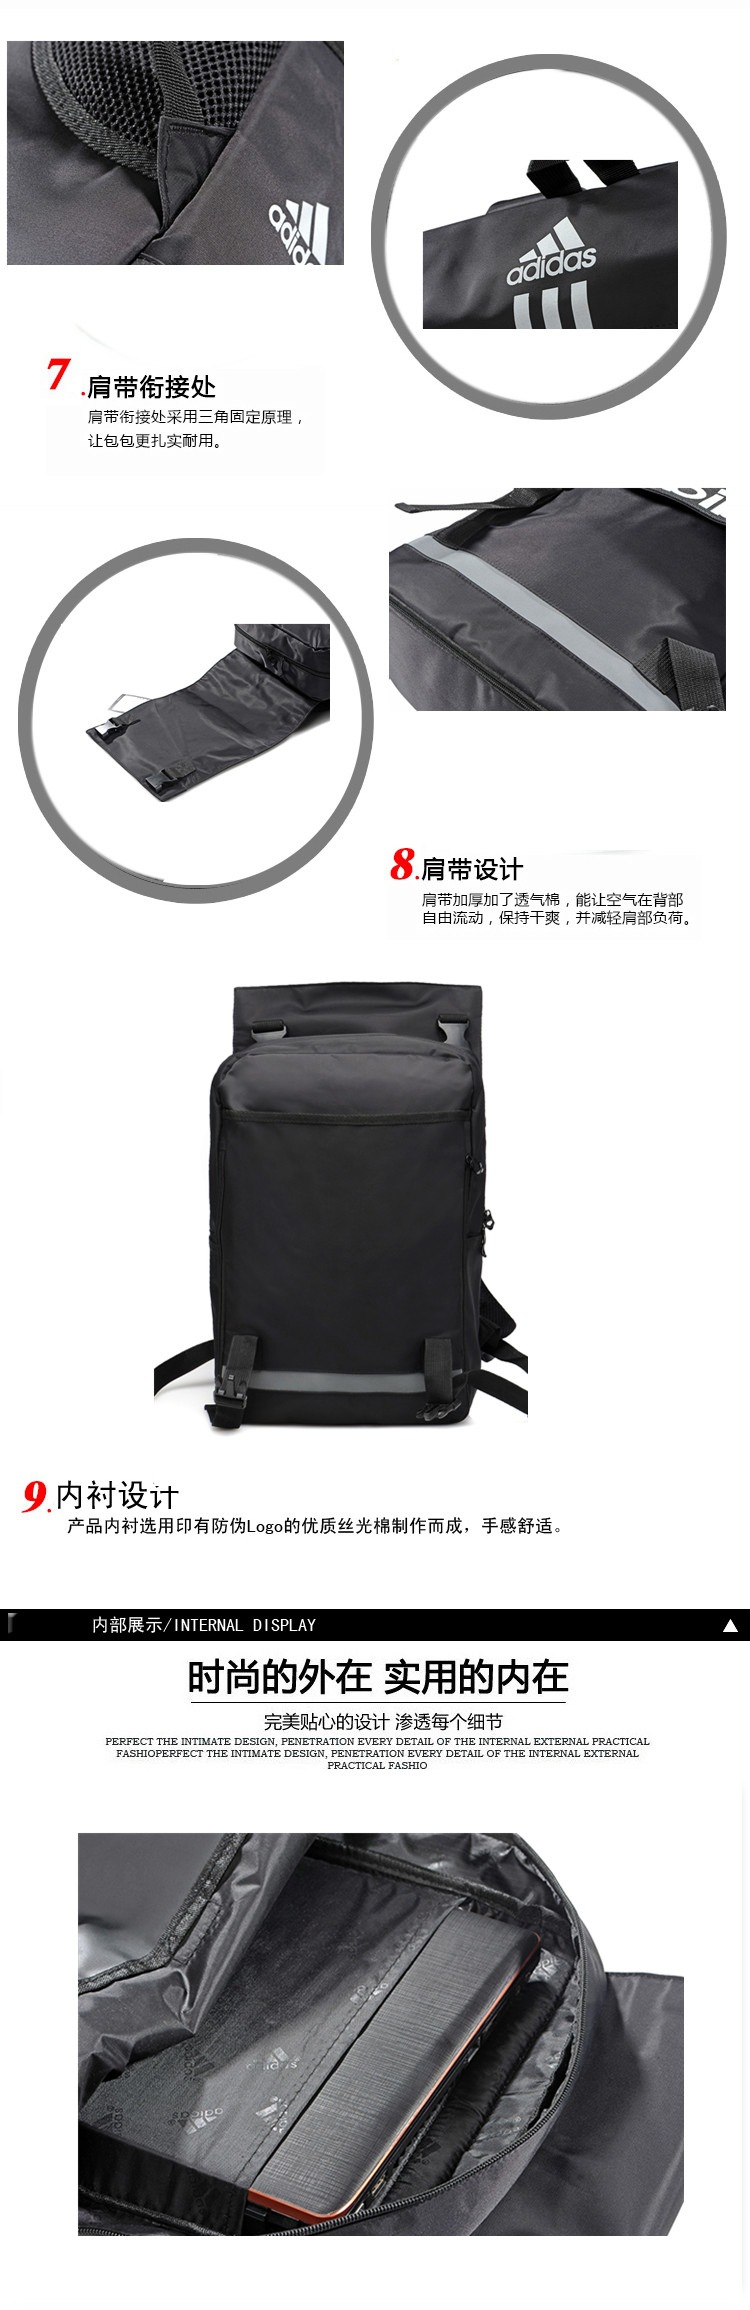 供应韩版三杆三叶时尚旅行包双肩电脑包定制OEMfz61201002